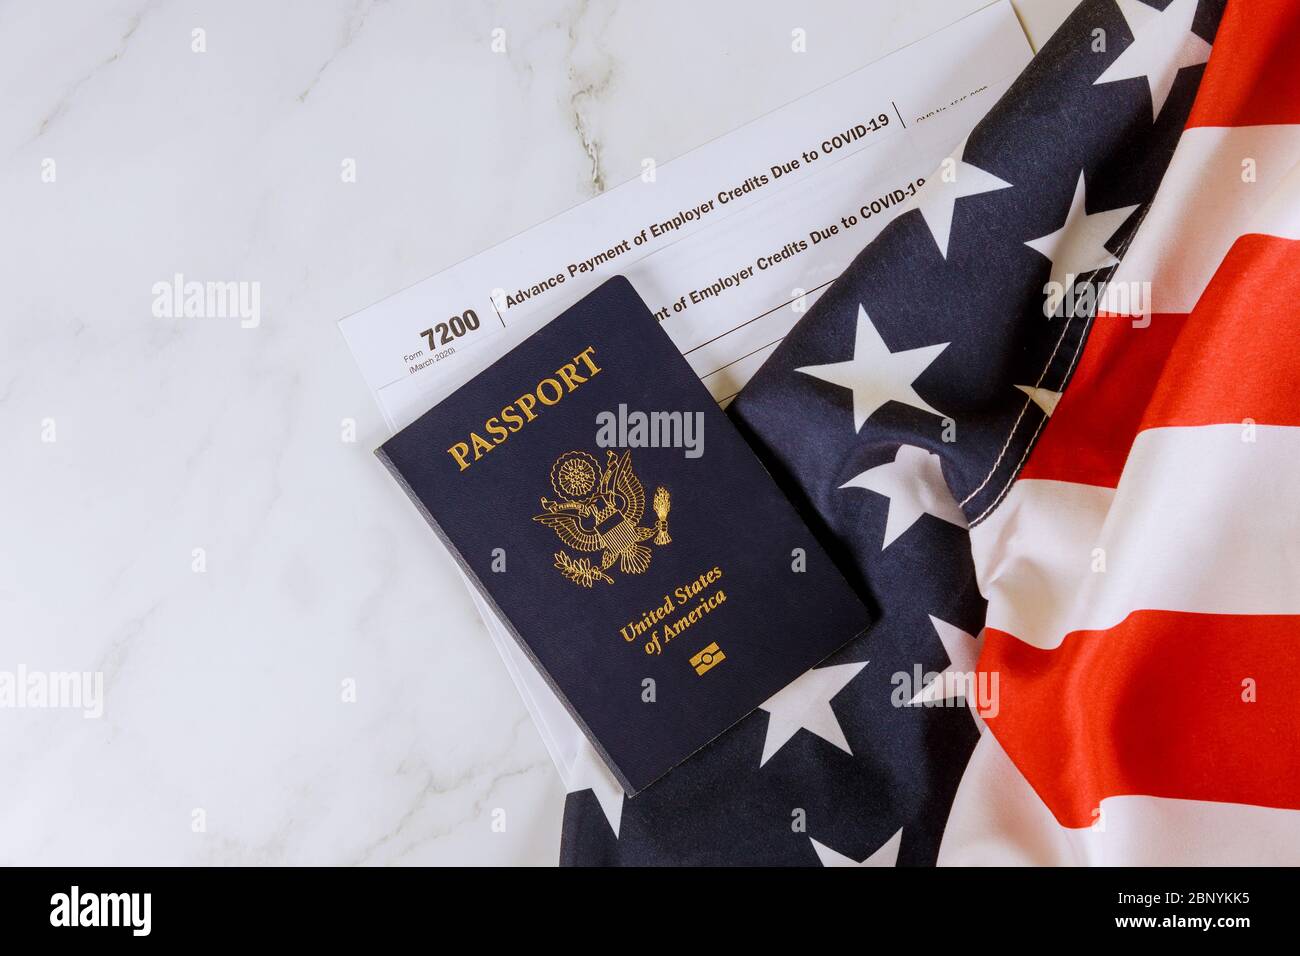 Bandiera americana, modulo 7200, pagamento anticipato dei crediti del Committente dovuto a COVID-19 sul passaporto degli Stati Uniti Foto Stock